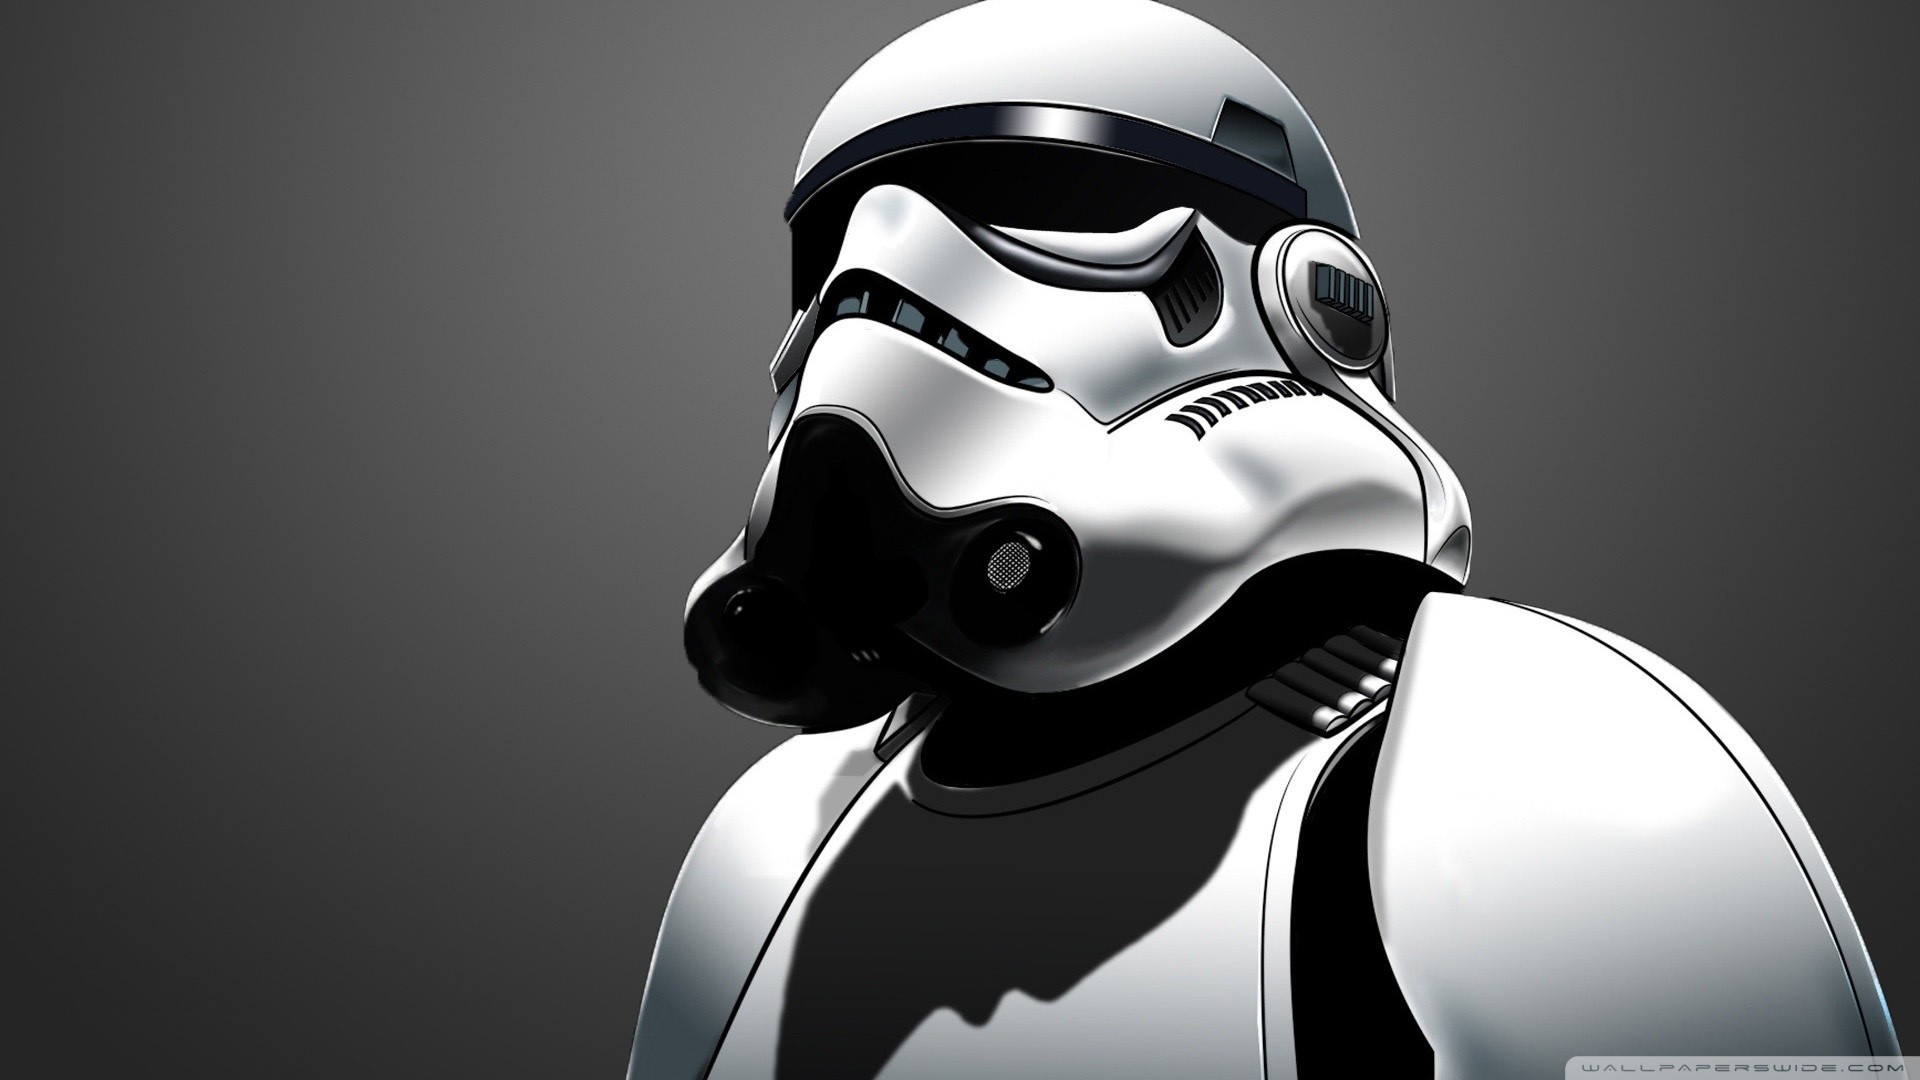 Star wars storm trooper hd desktop wallpaper widescreen High resolution